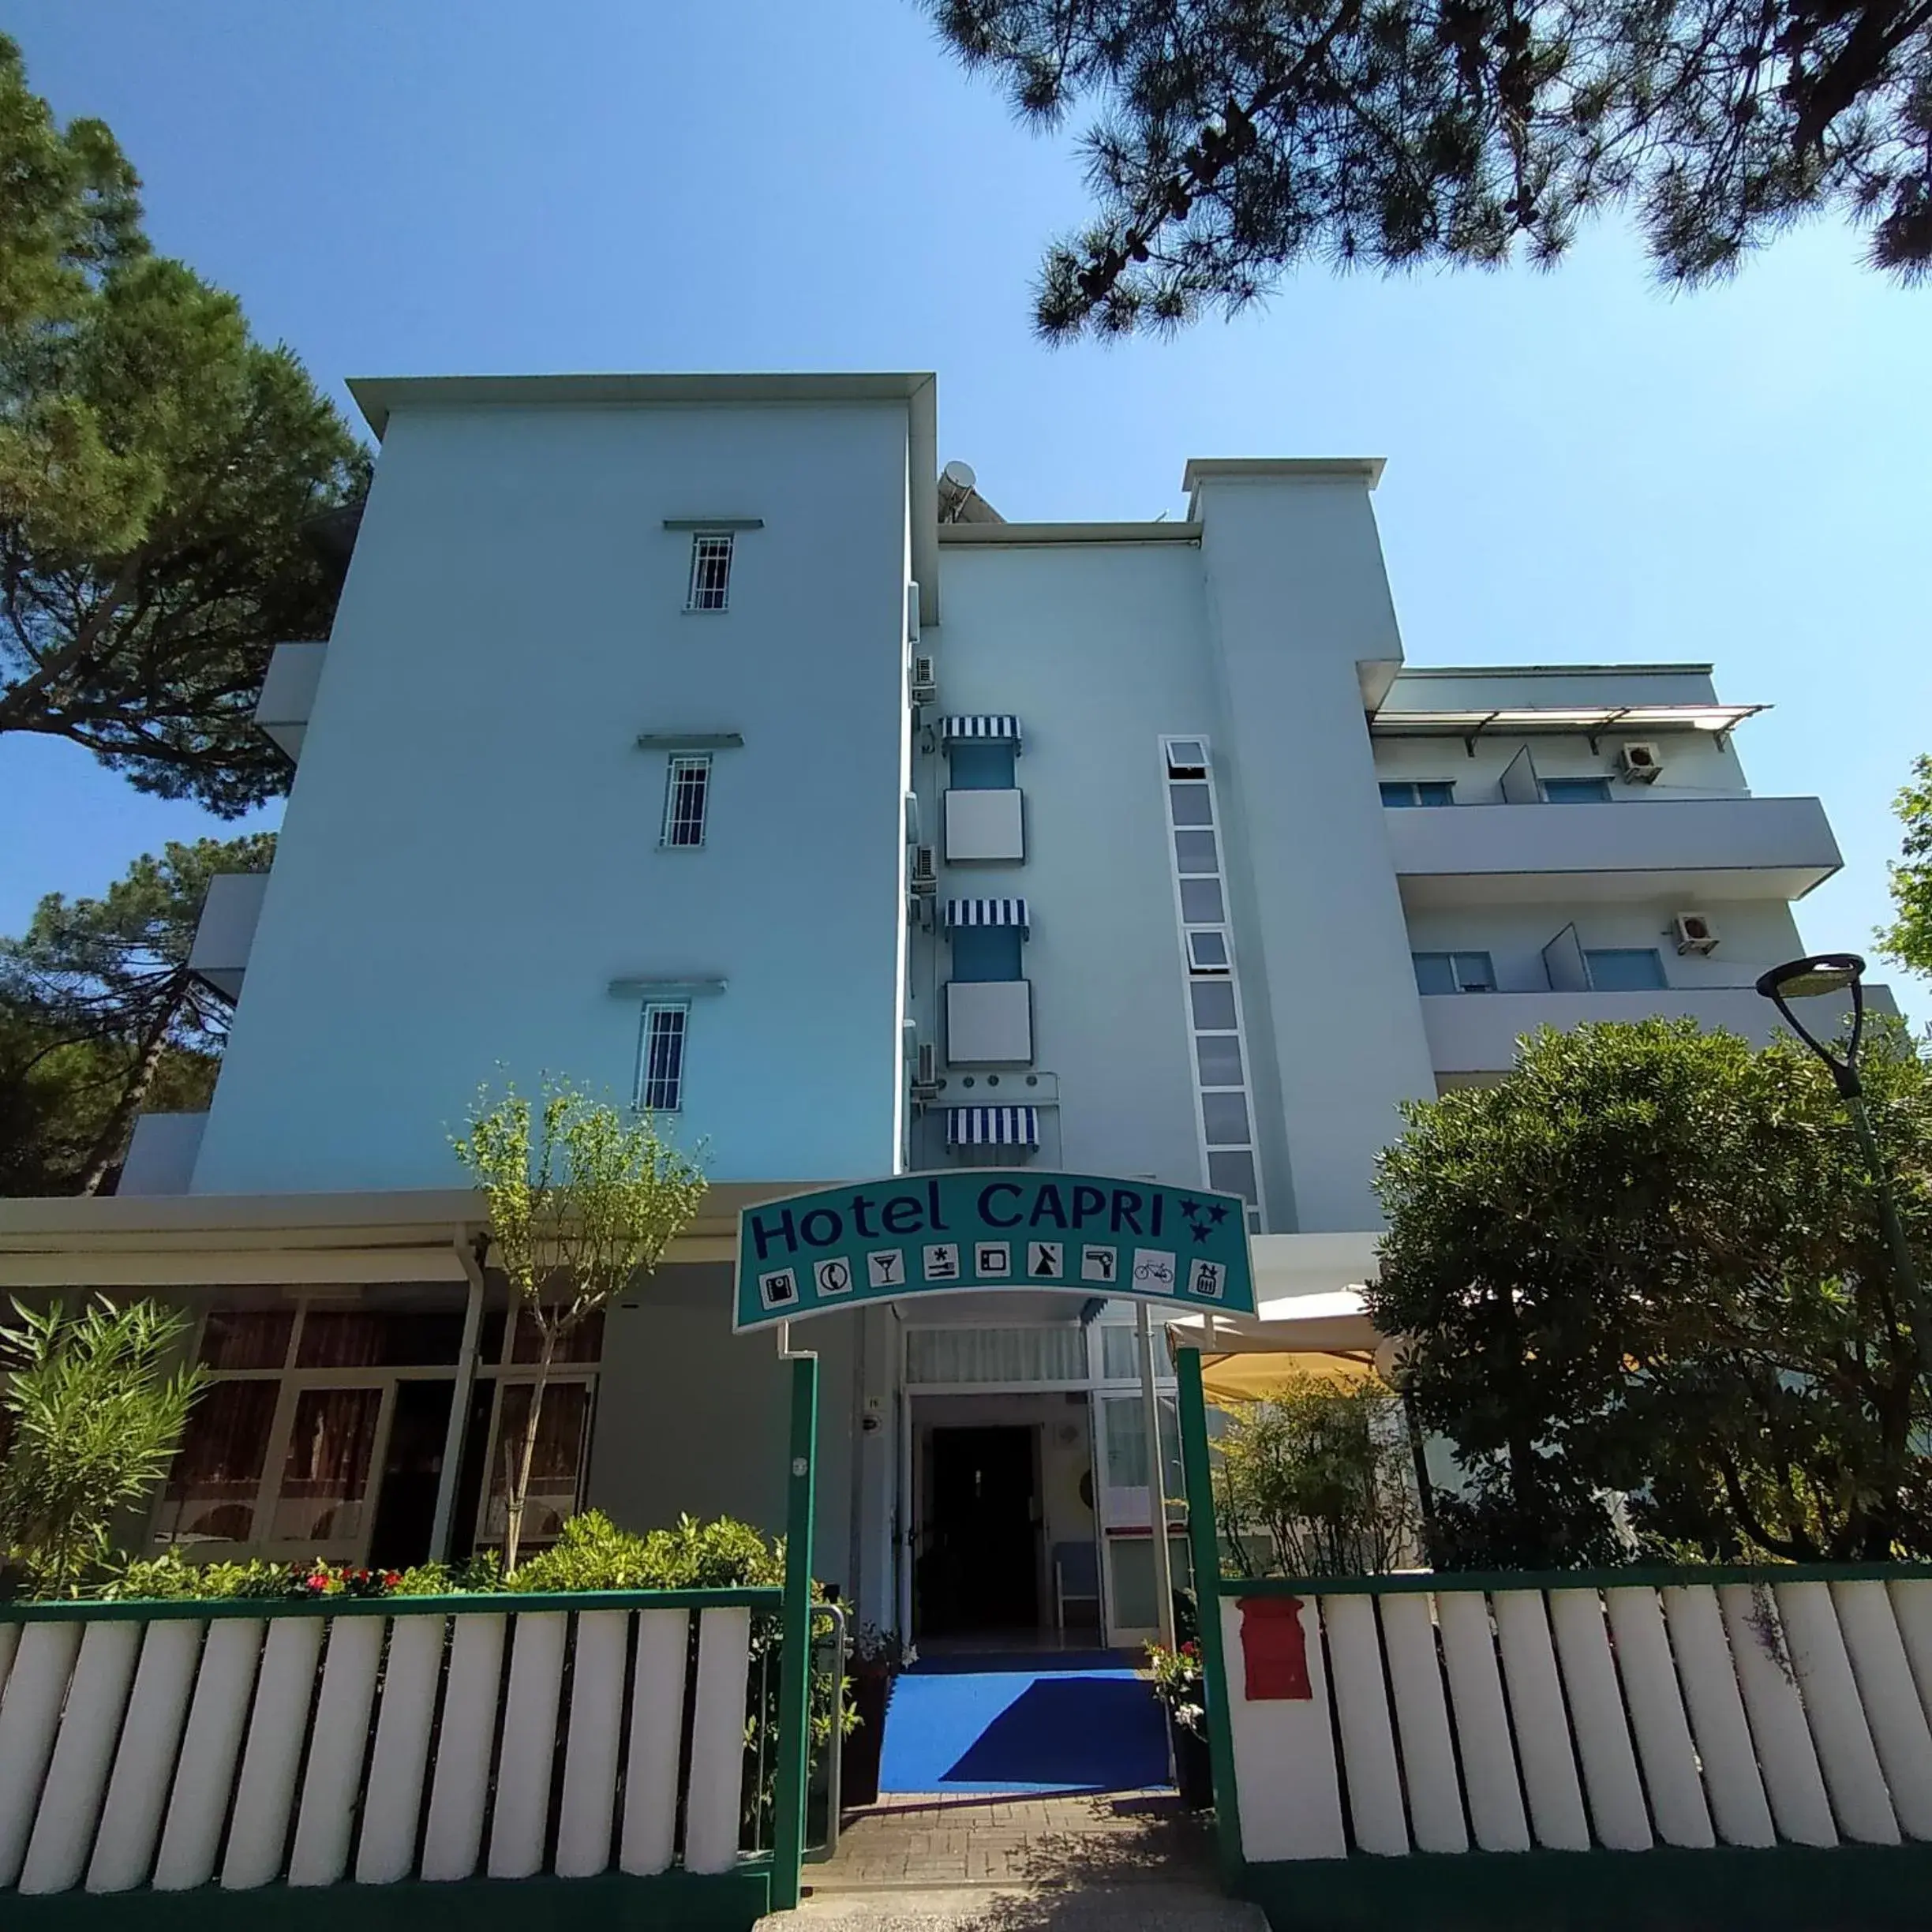 Property Building in Hotel Capri